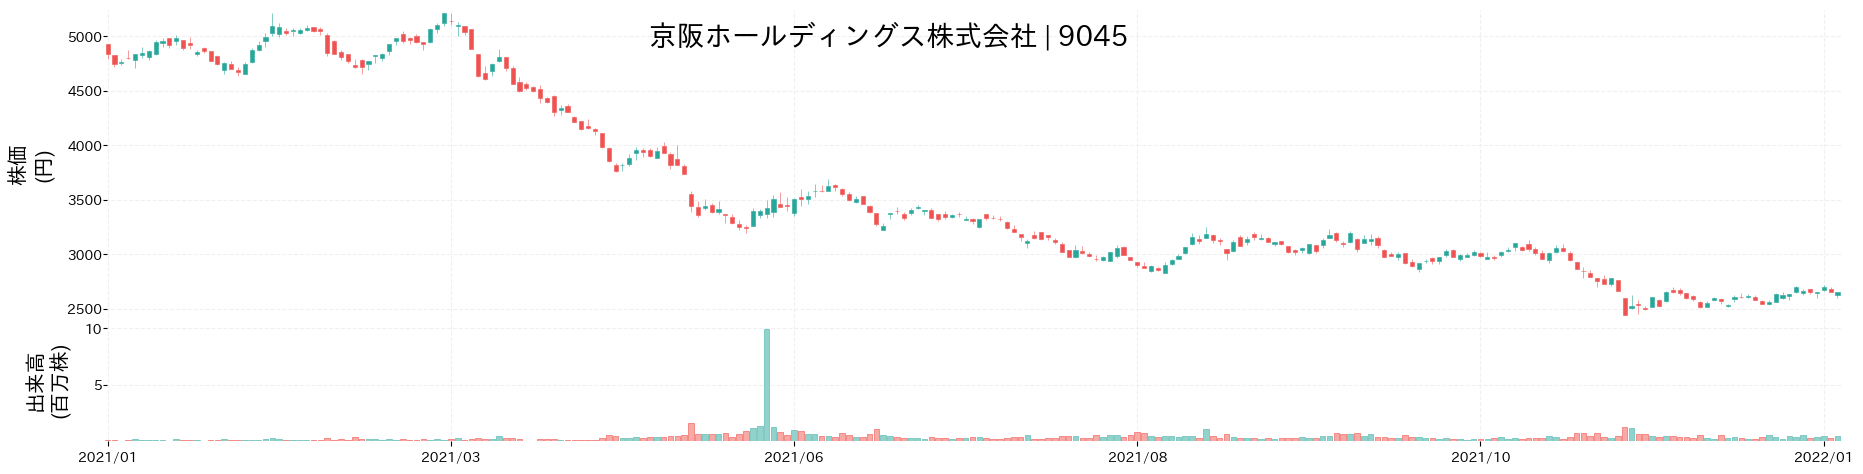 京阪ホールディングスの株価推移(2021)